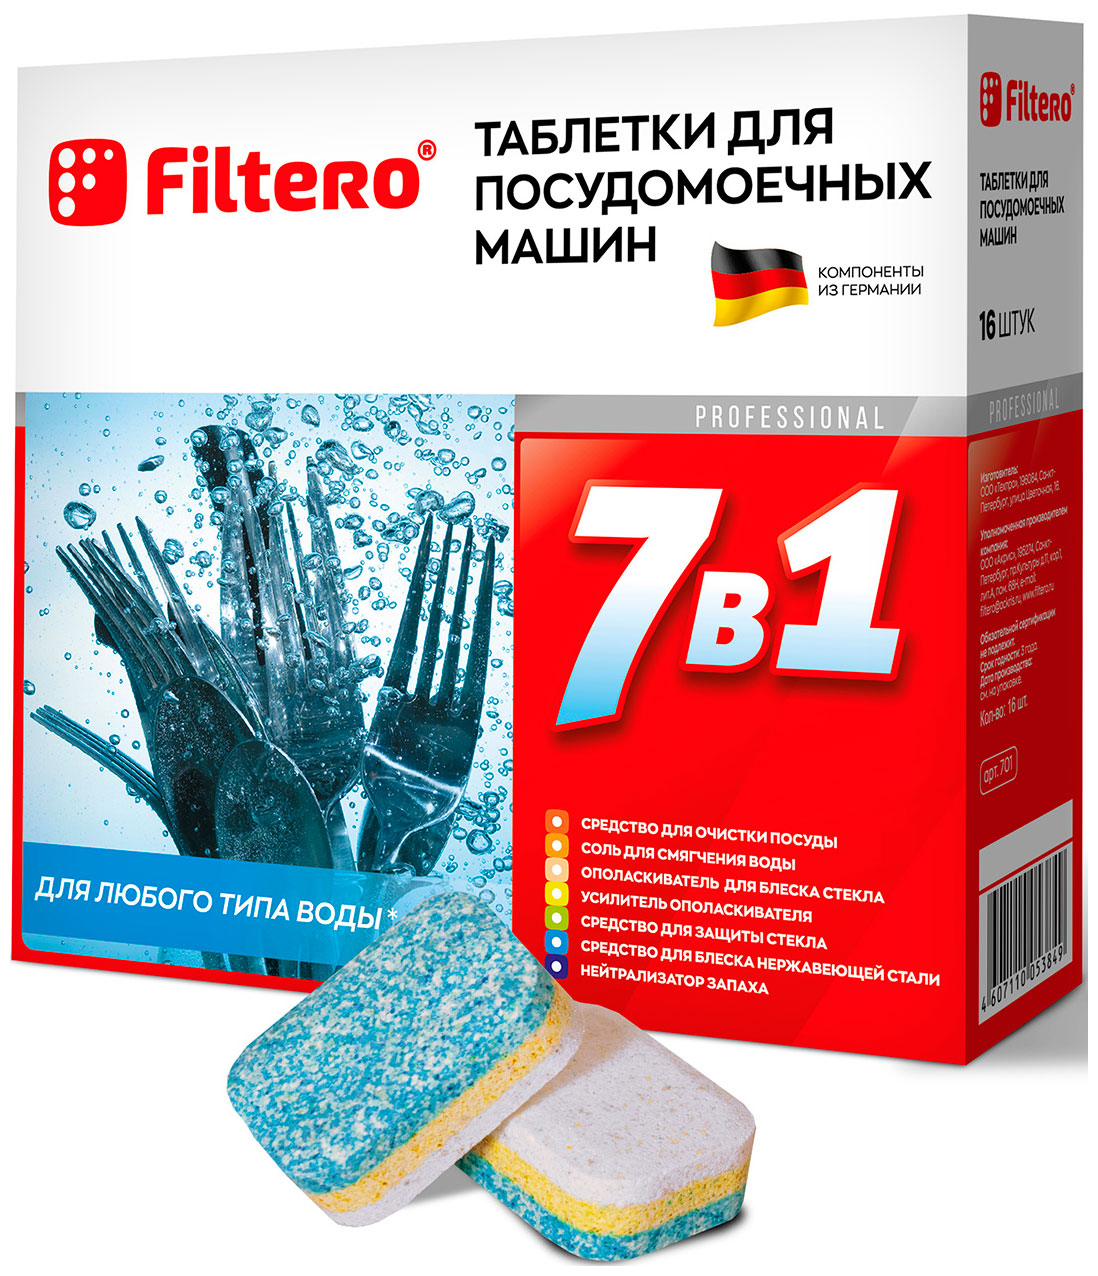 Таблетки для посудомоечных машин Filtero Filtero 7 в 1 таблетки для посудомоечной машины таблетки для посудомоечной машины filtero таблетки для посудомоечной машины 7 в 1